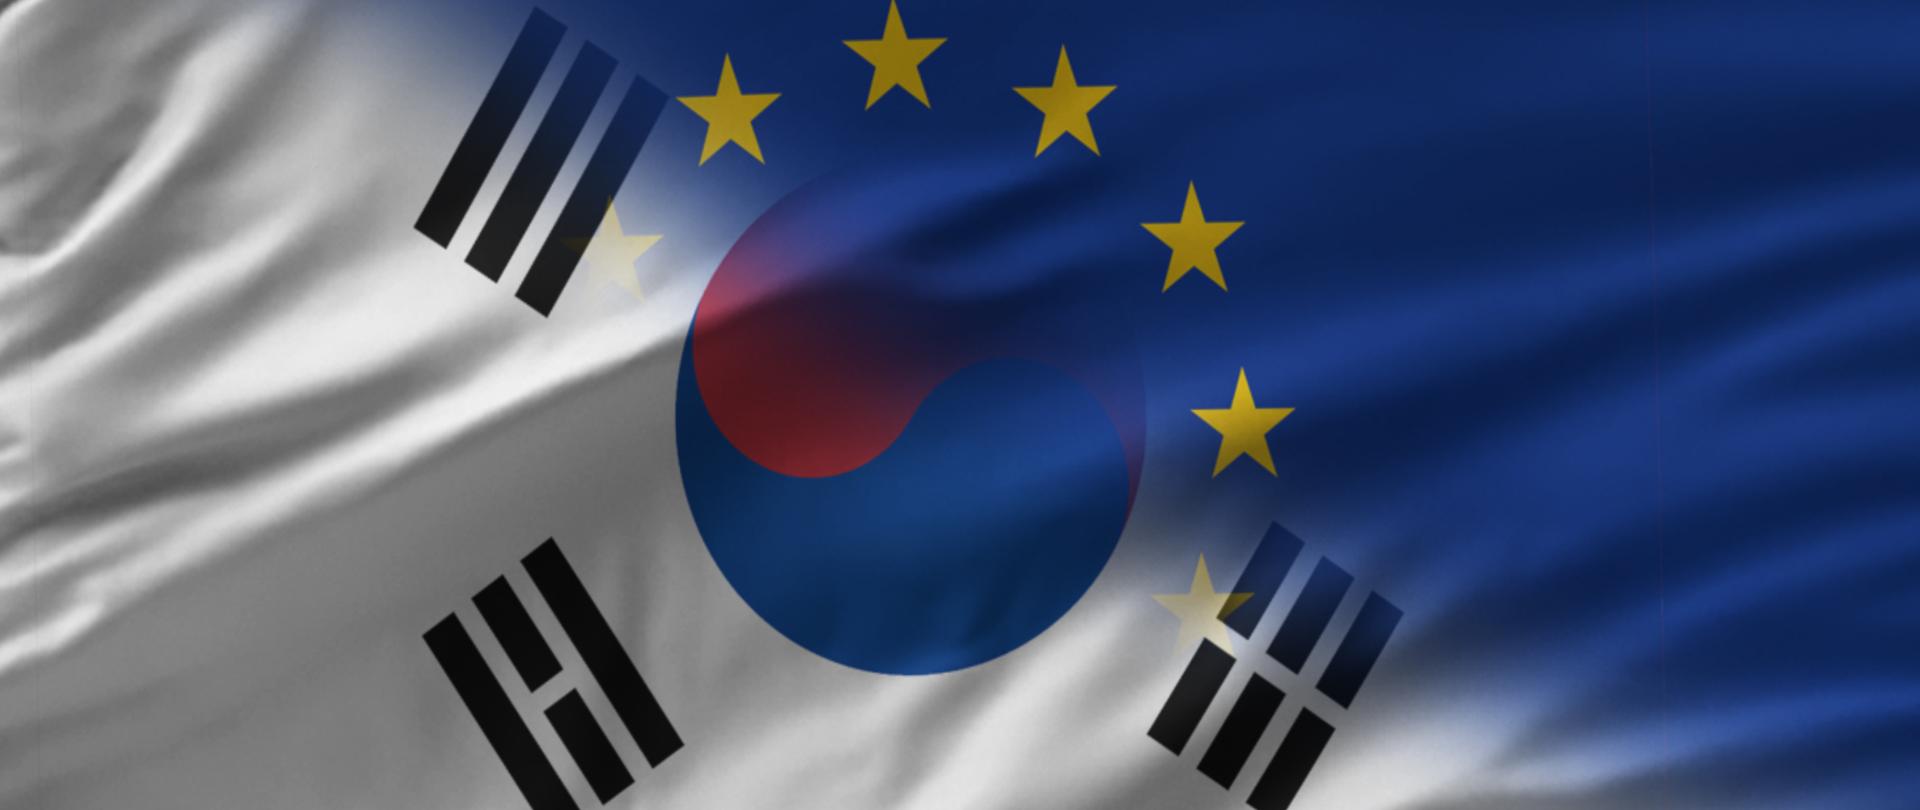 Nachodzące na siebie flagi Unii Europejskiej i Korei Południowej.